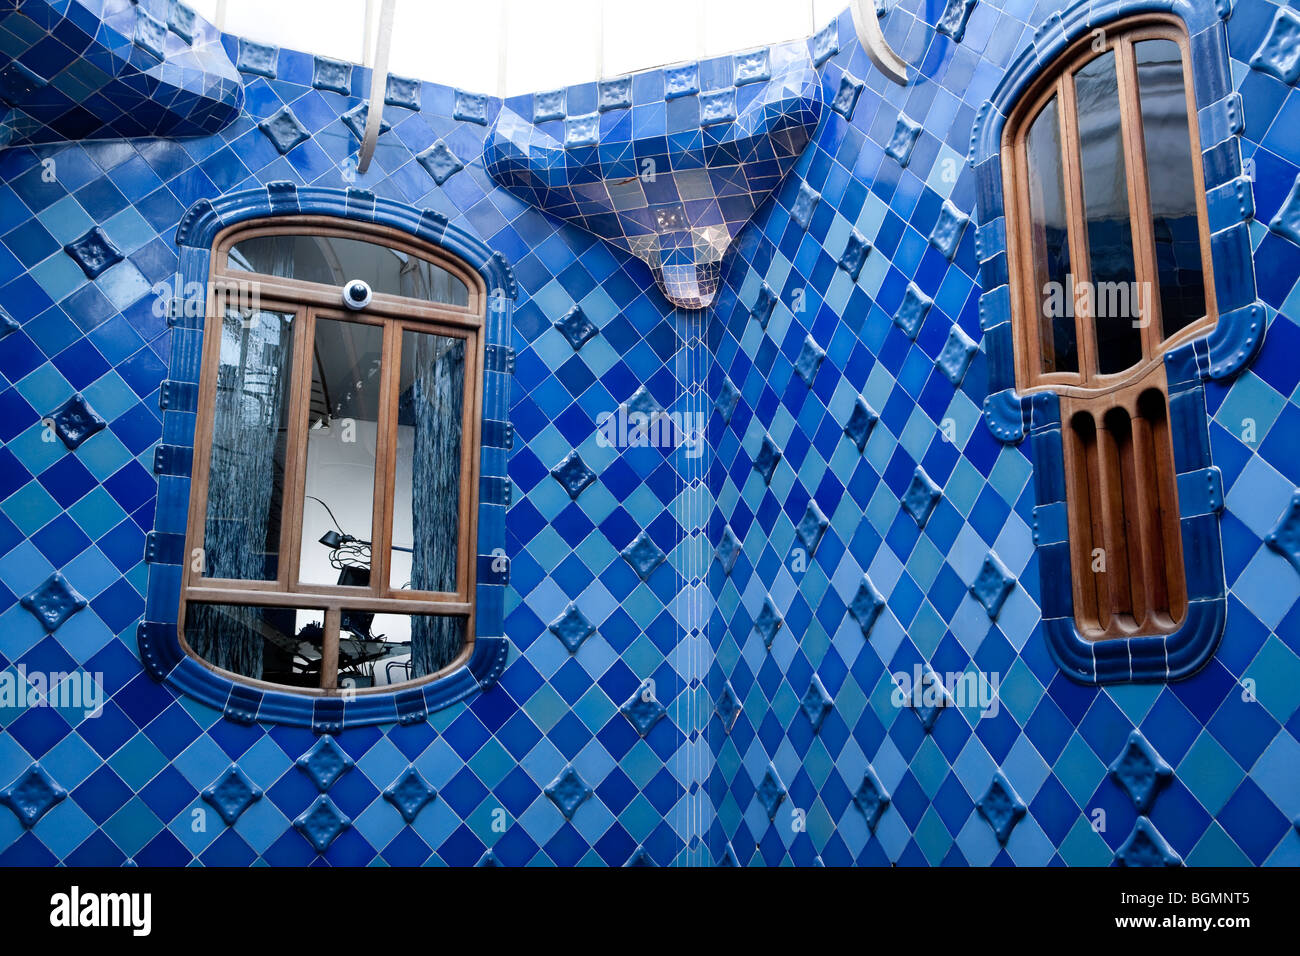 Barcelona - Spanisch-Art-Nouveau-Bewegung - Modernisme - Casa Batllo - Gaudi - Stadtteil Eixample Stockfoto